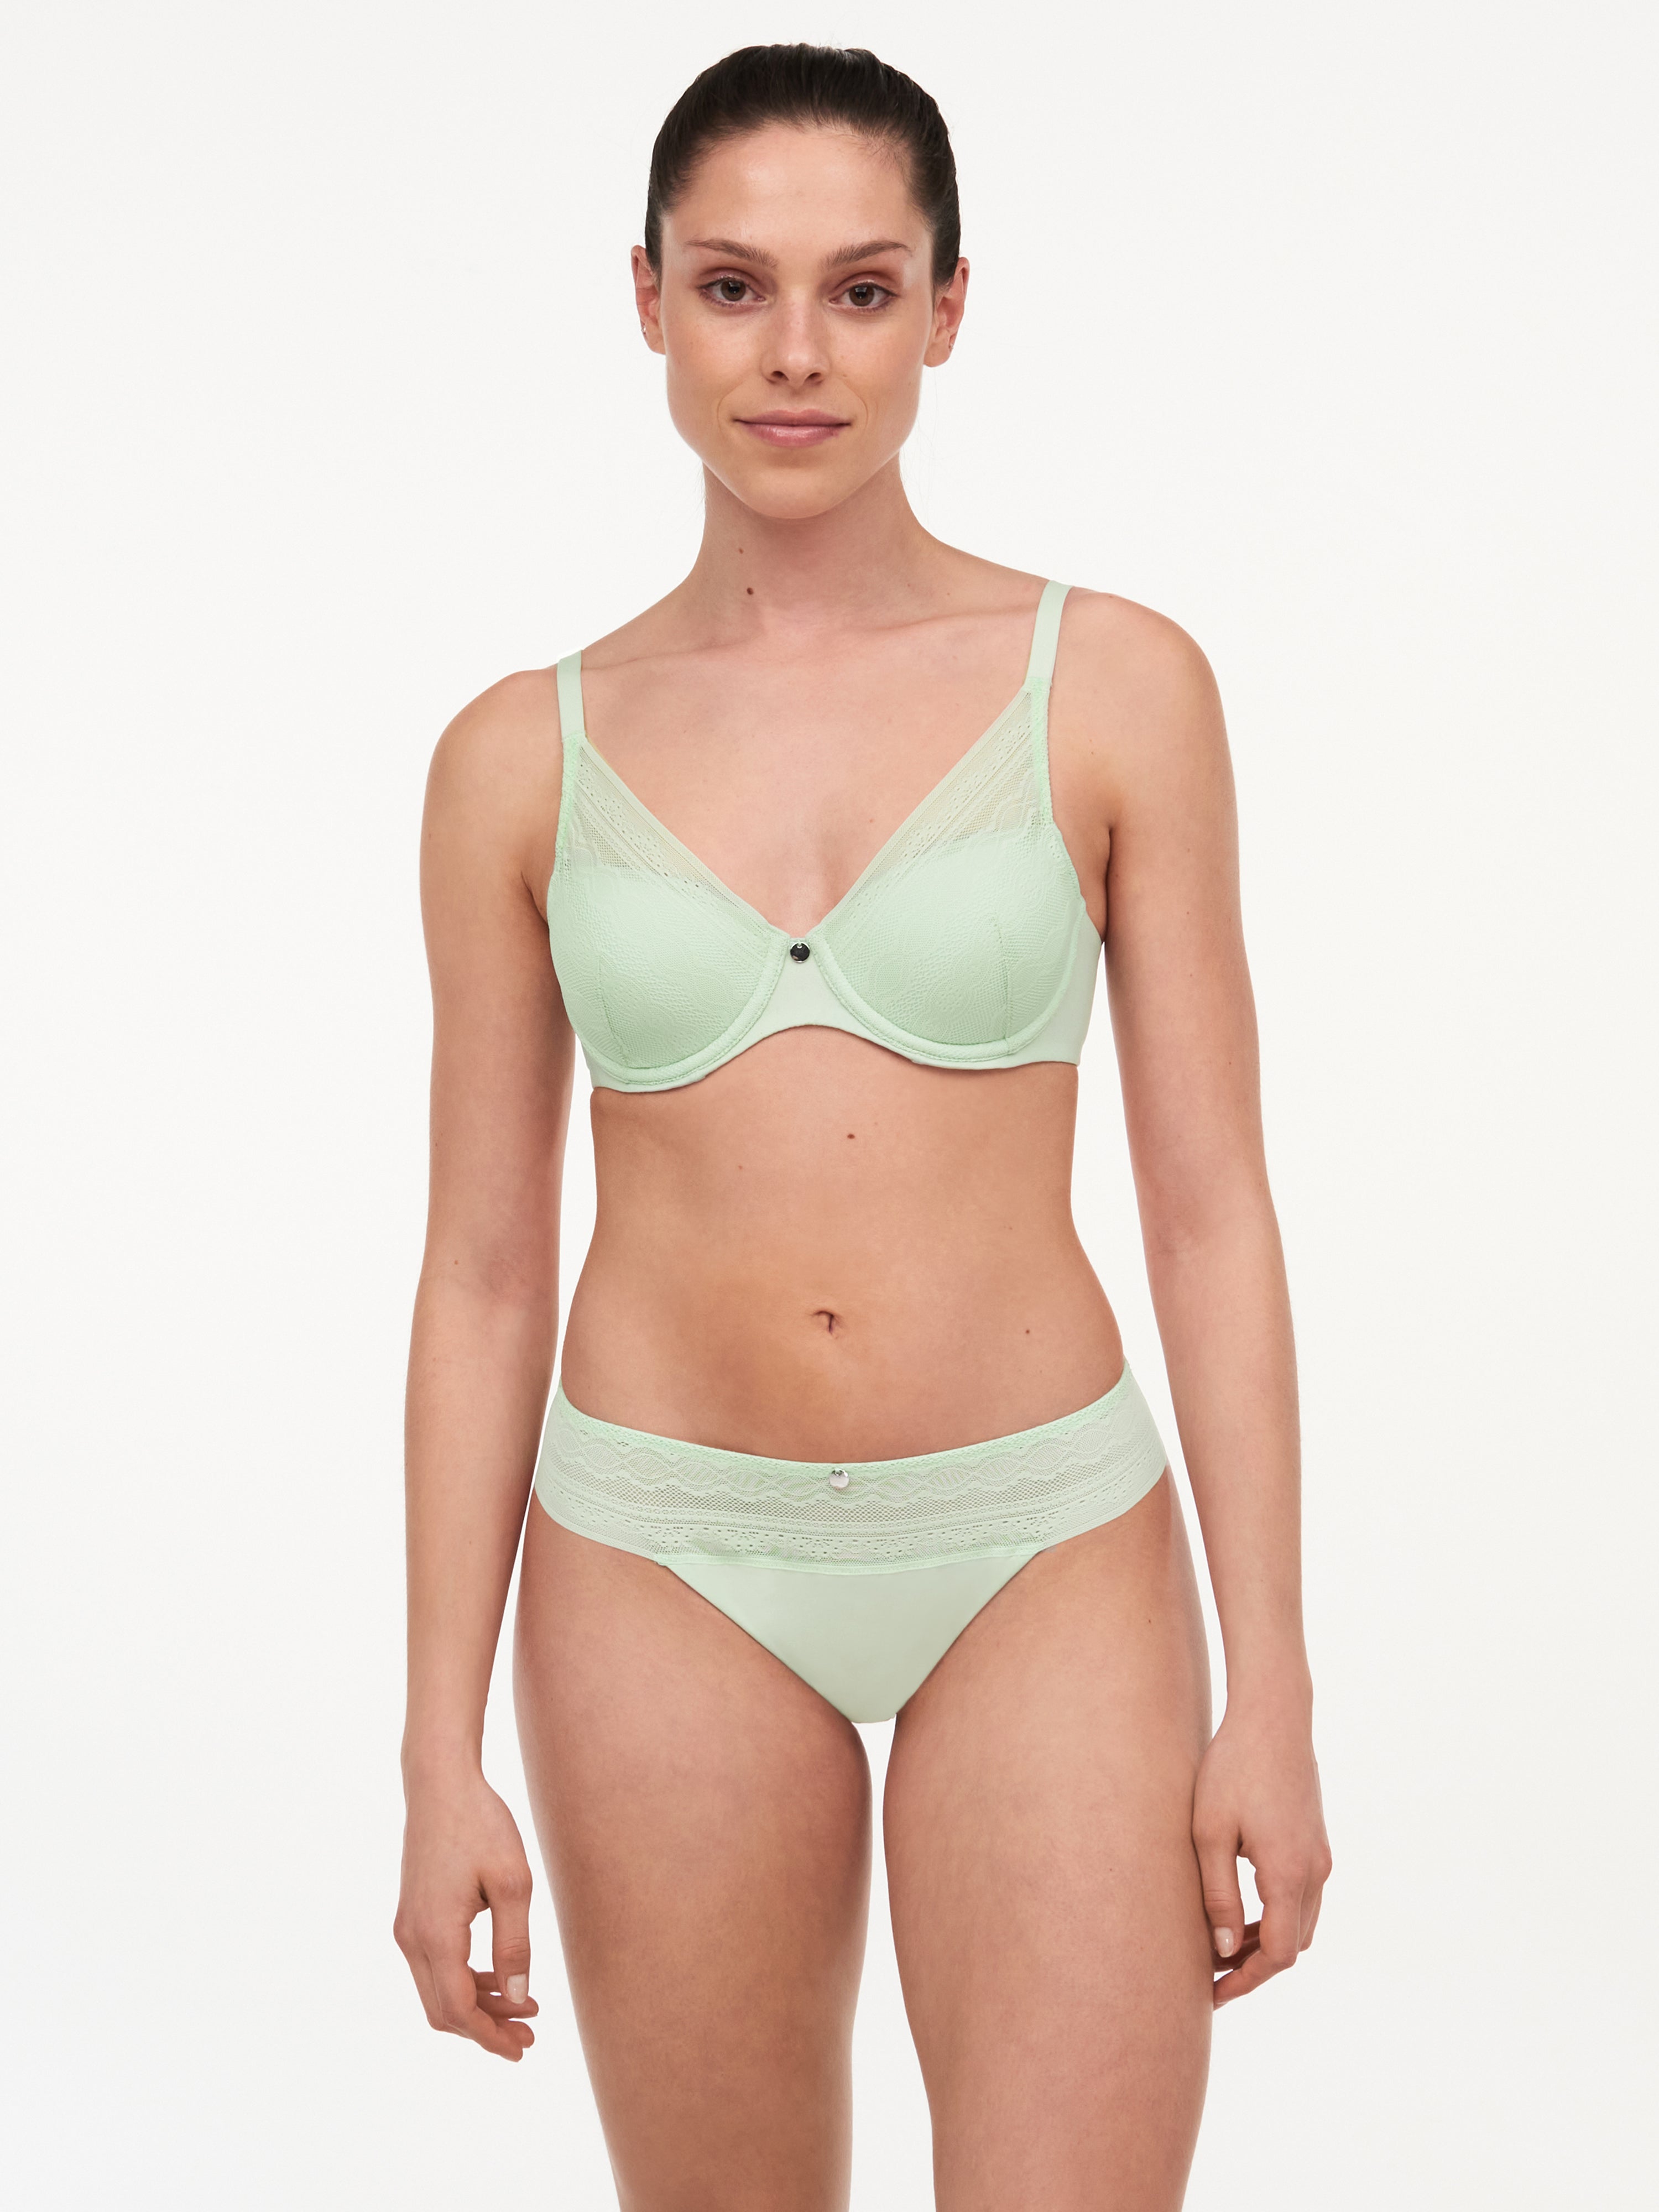 Femilet Kristen Memory Foam T-Shirt Bra - Green Lily – Sheer Essentials  Lingerie & Swimwear